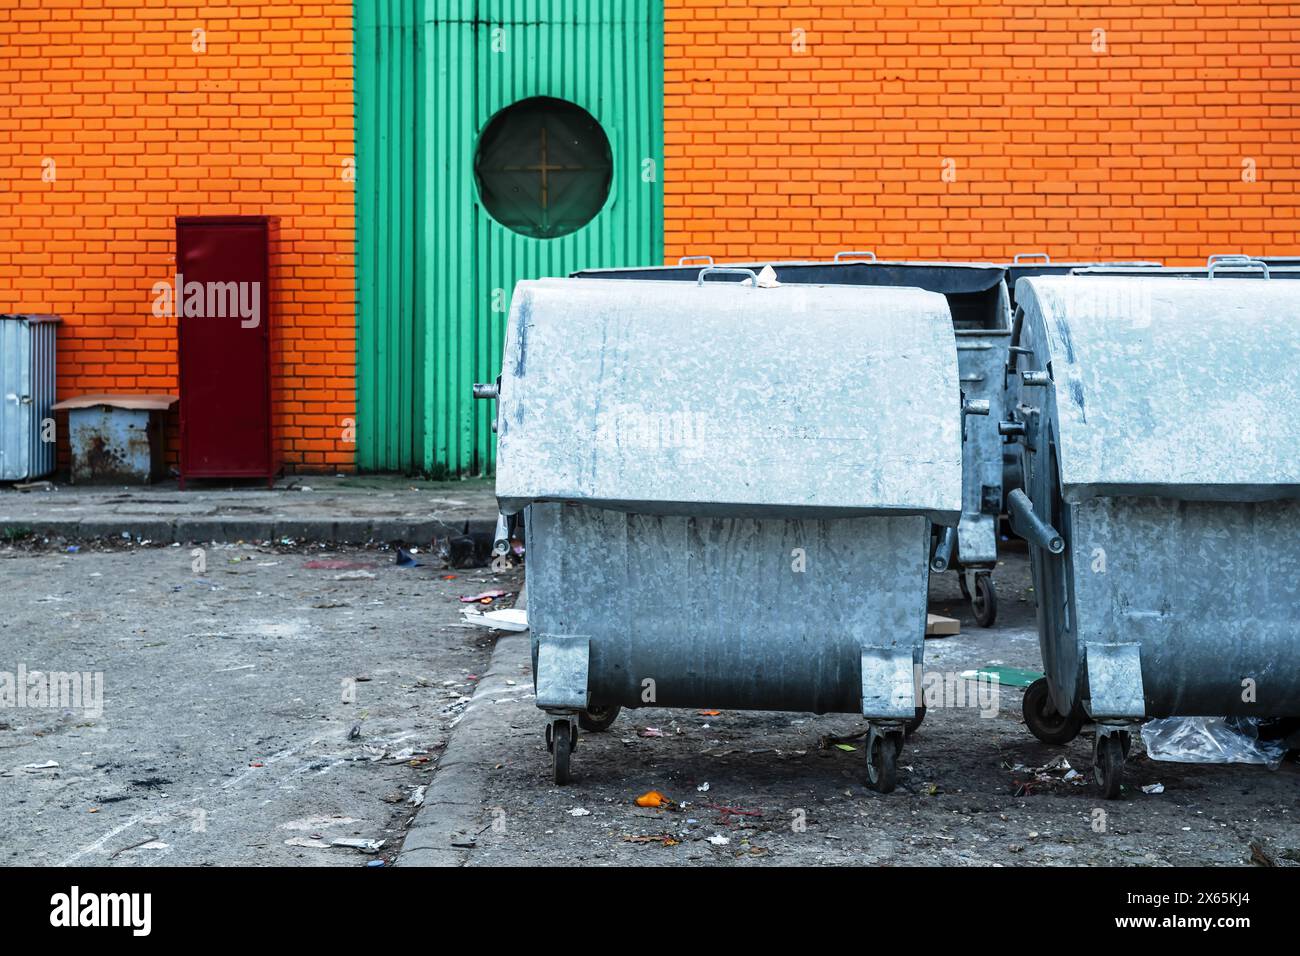 Bennes à ordures métalliques dans la rue, mise au point sélective Banque D'Images